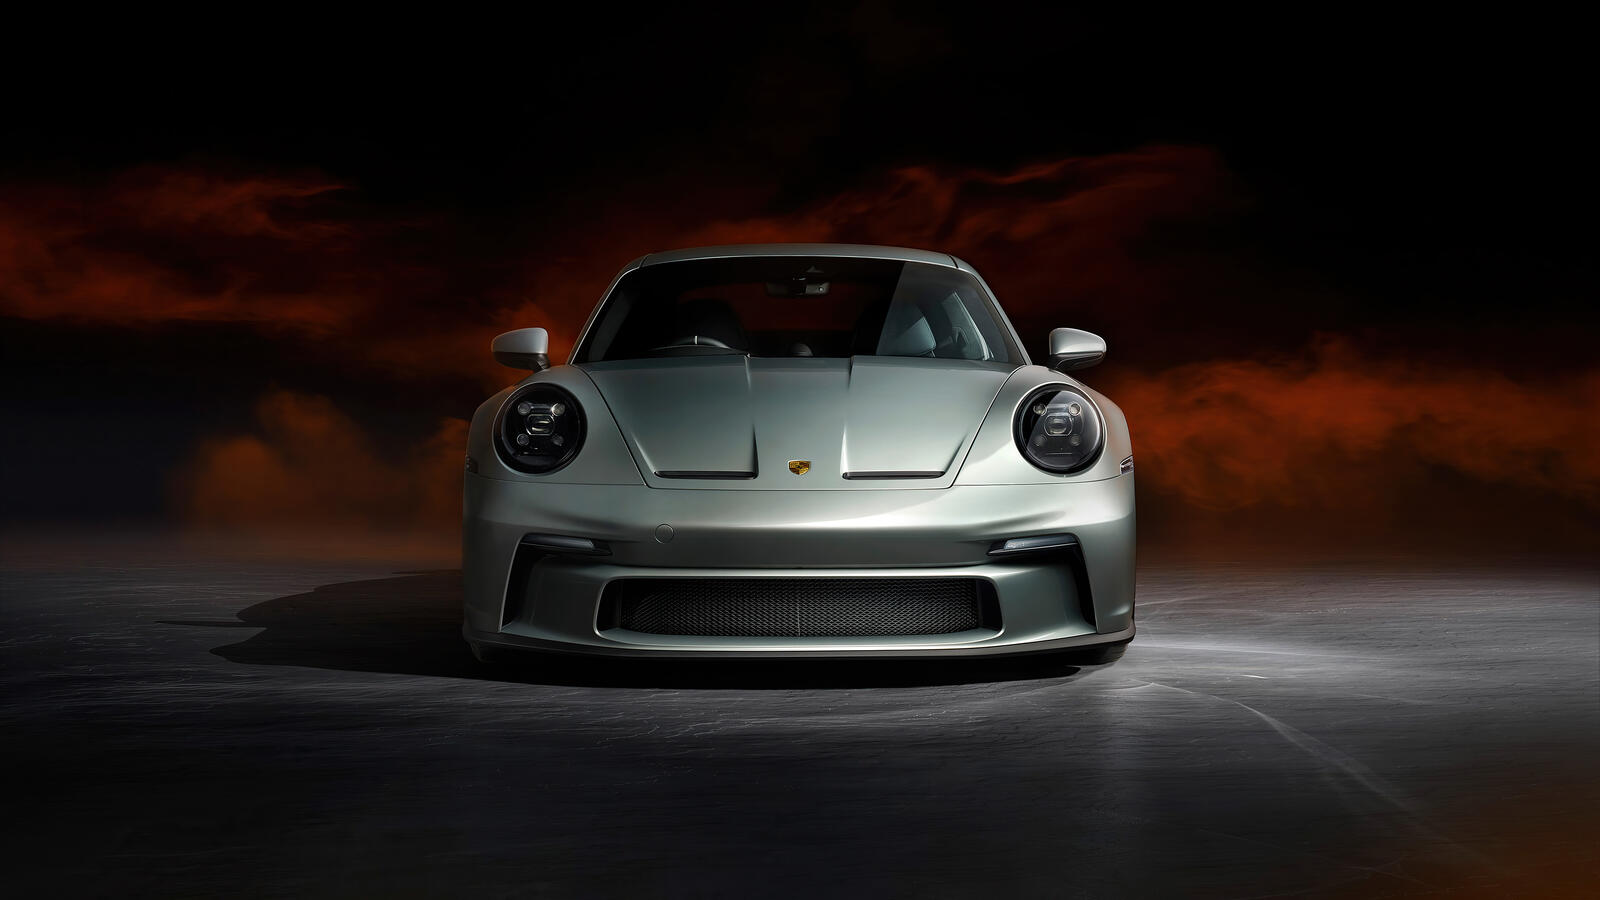 Wallpapers Porsche Porsche 911 2021 cars on the desktop